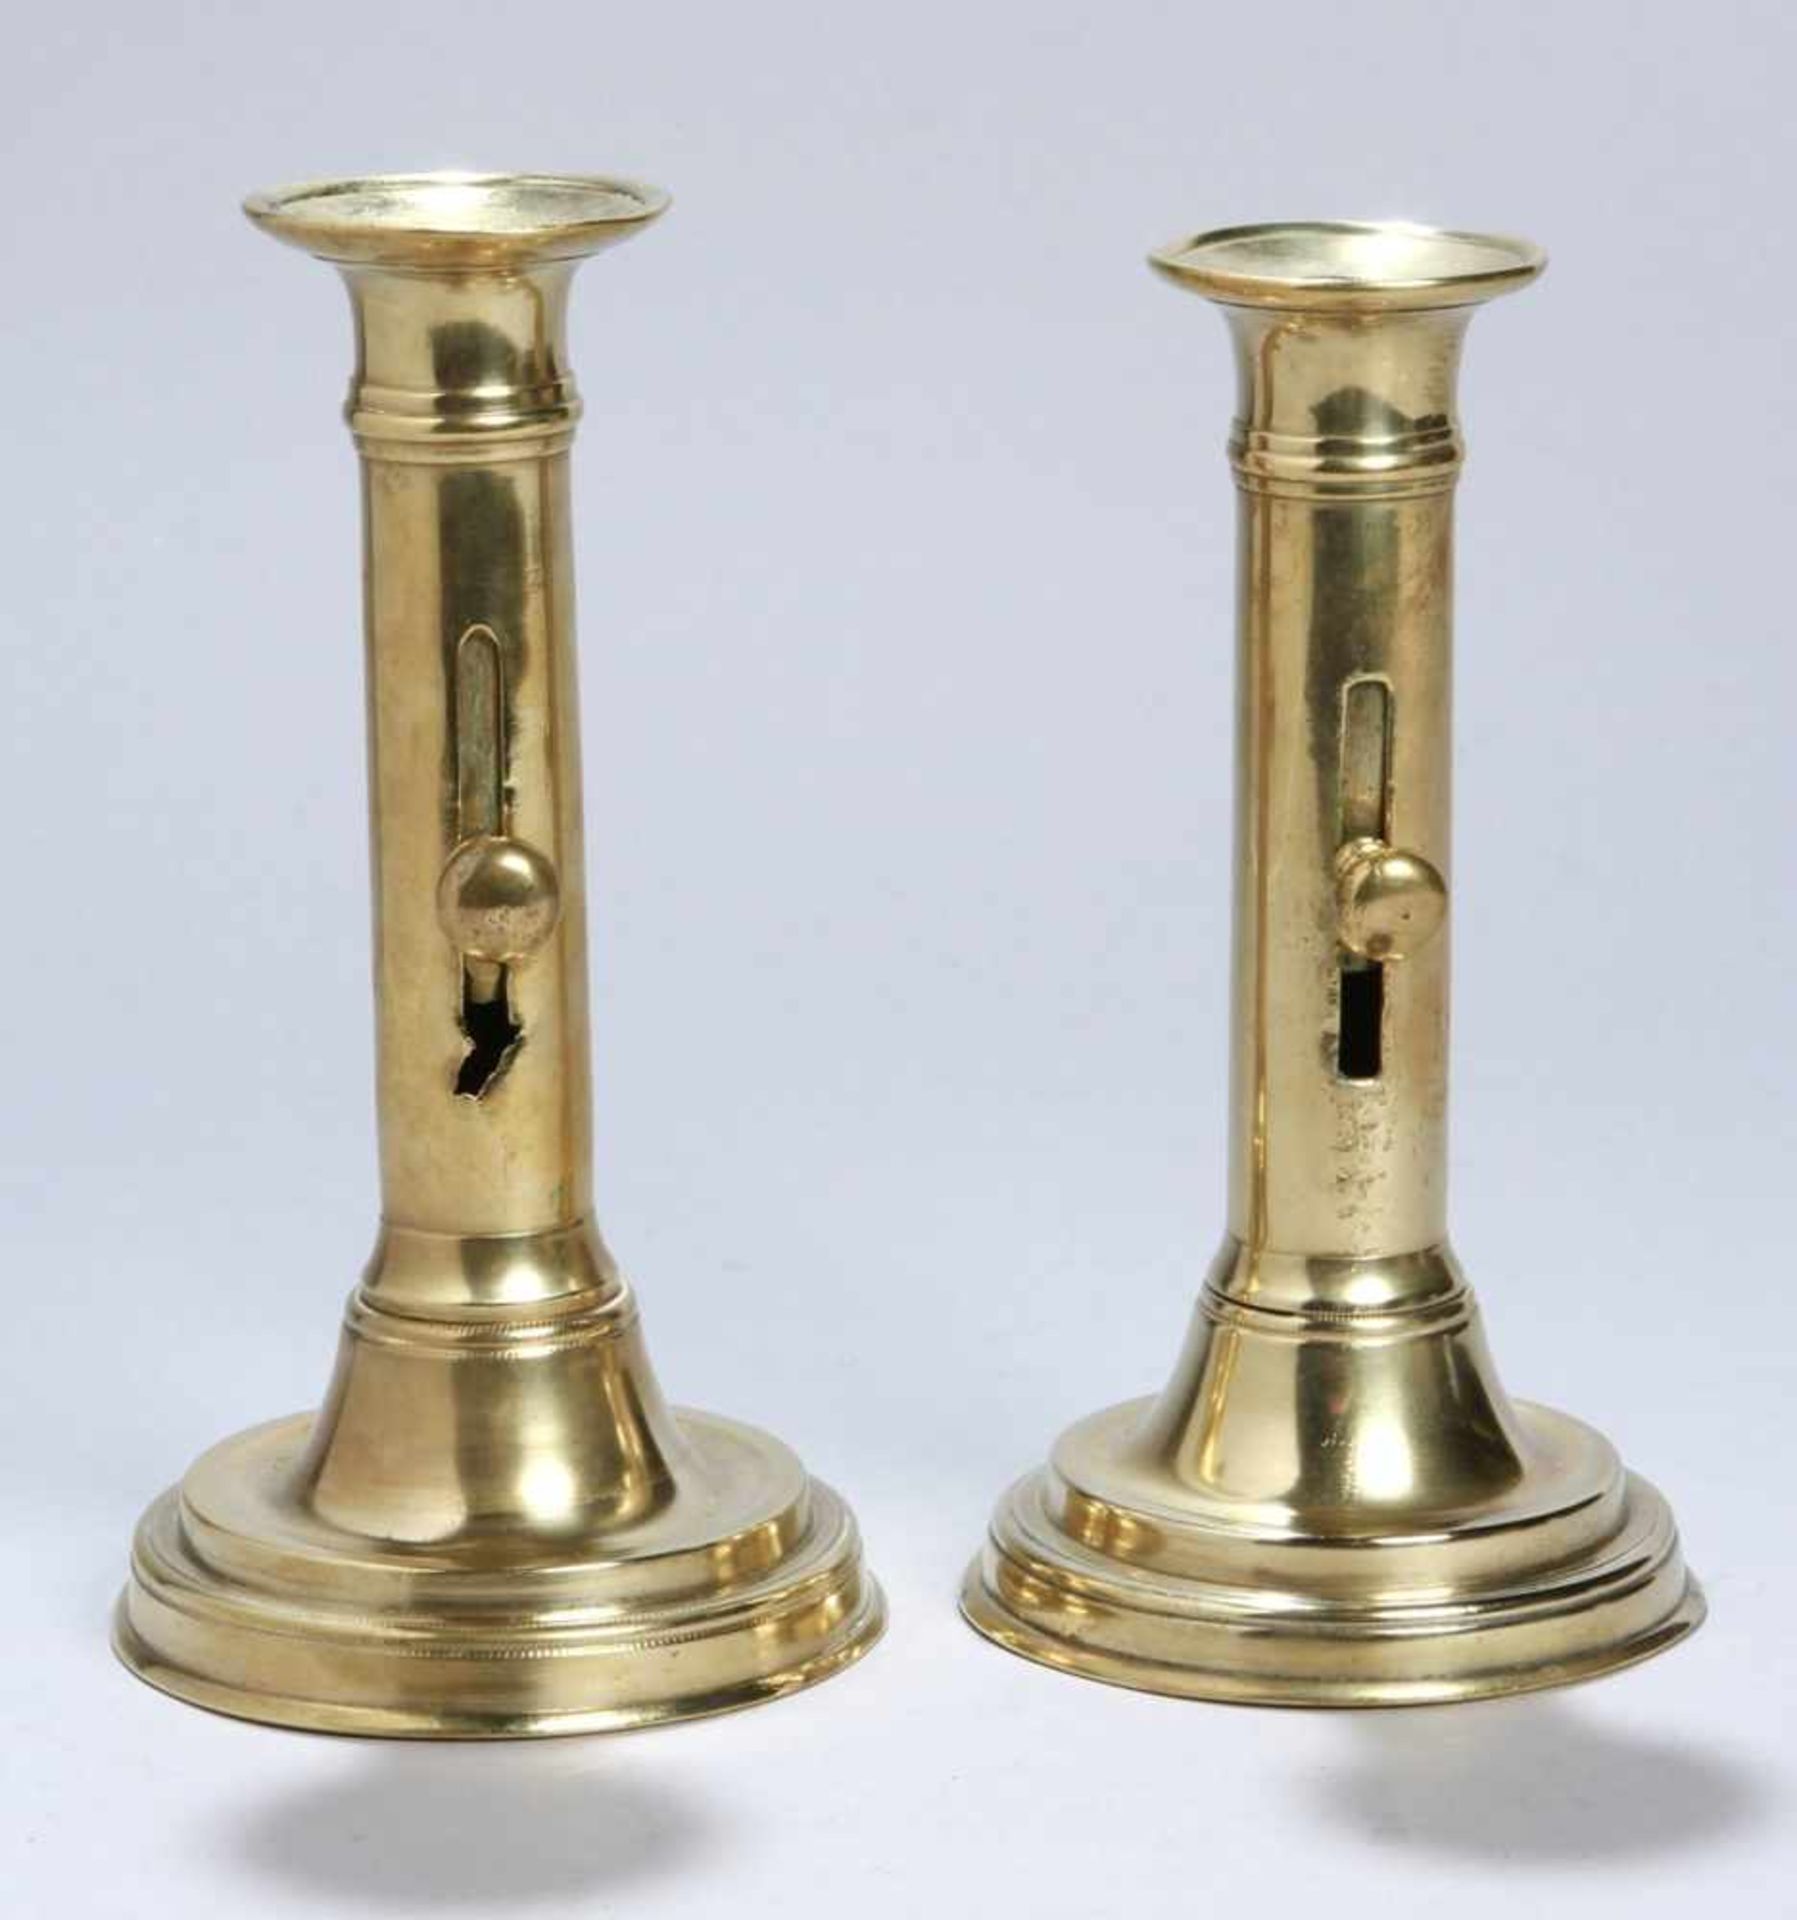 Zwei Messing-Schiebeleuchter, dt., 1. Hälfte 19. Jh., Rundstand mit trompetenförmigemAufbau und